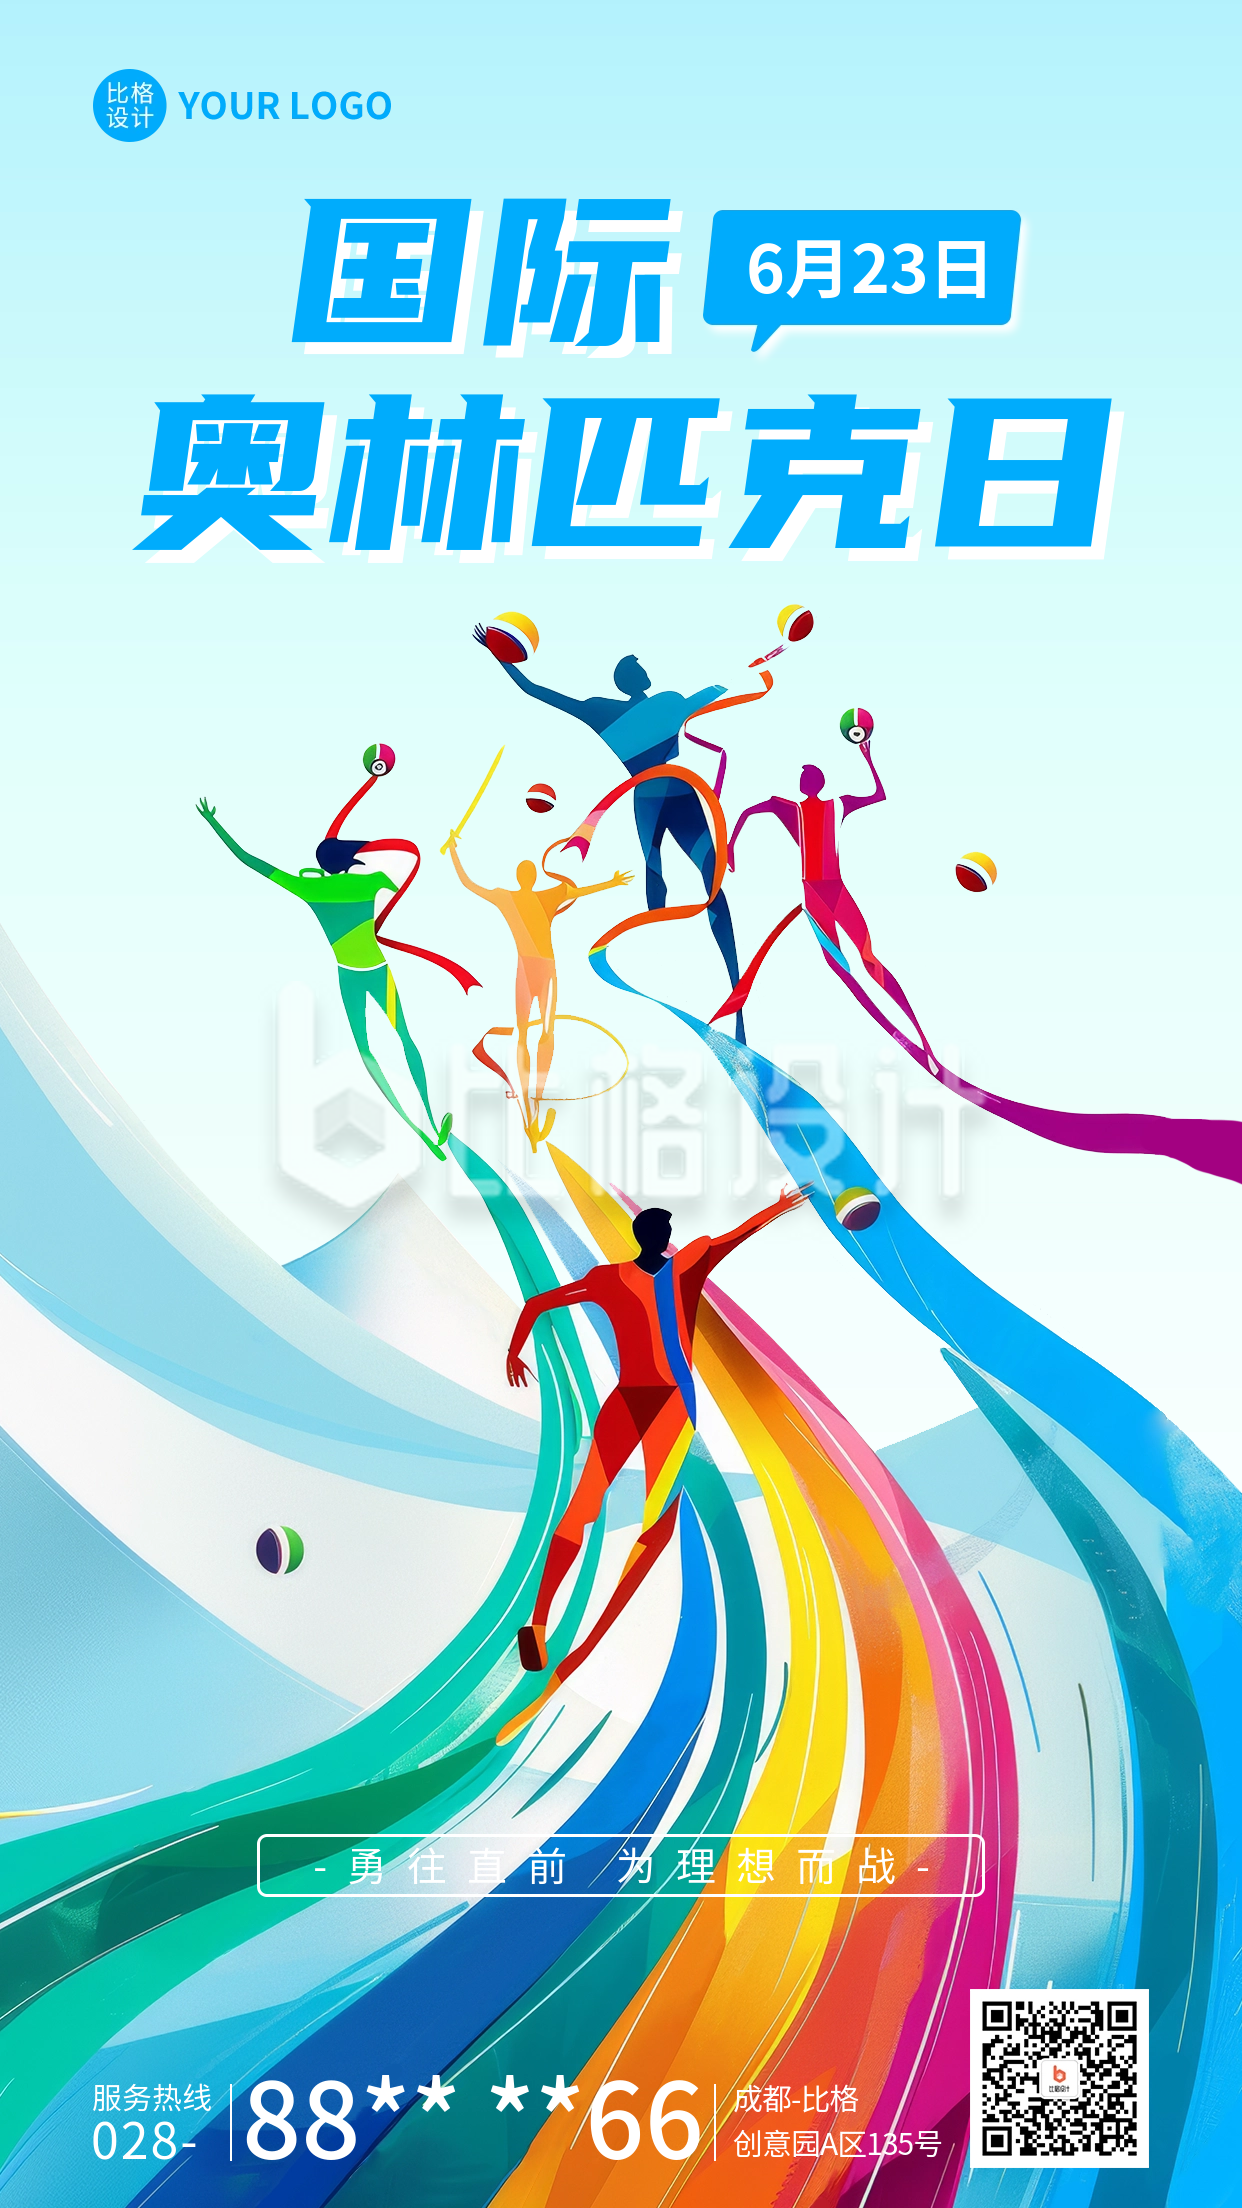 国际奥林匹克日宣传海报